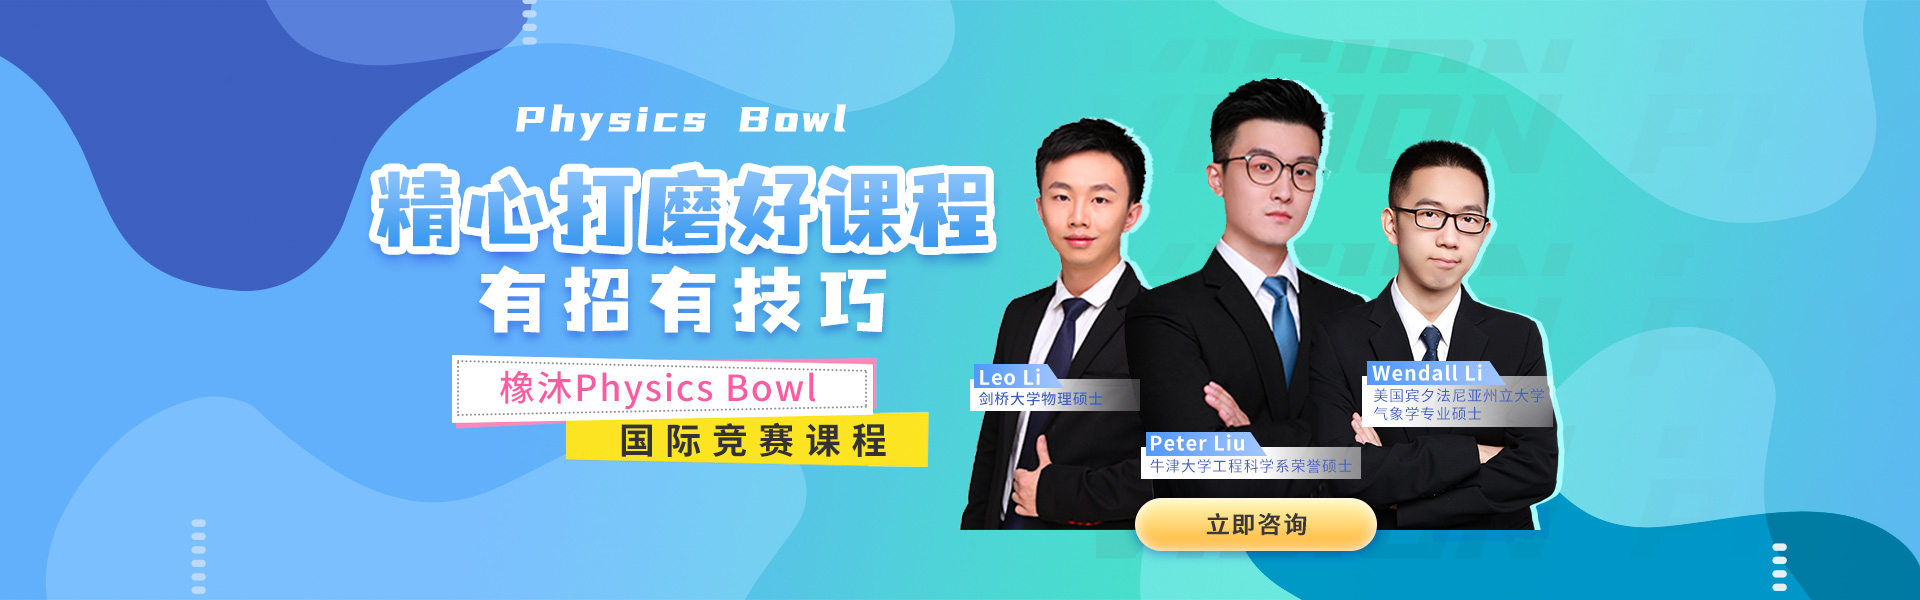 Physics Bowl物理碗竞赛橡沐国际教育